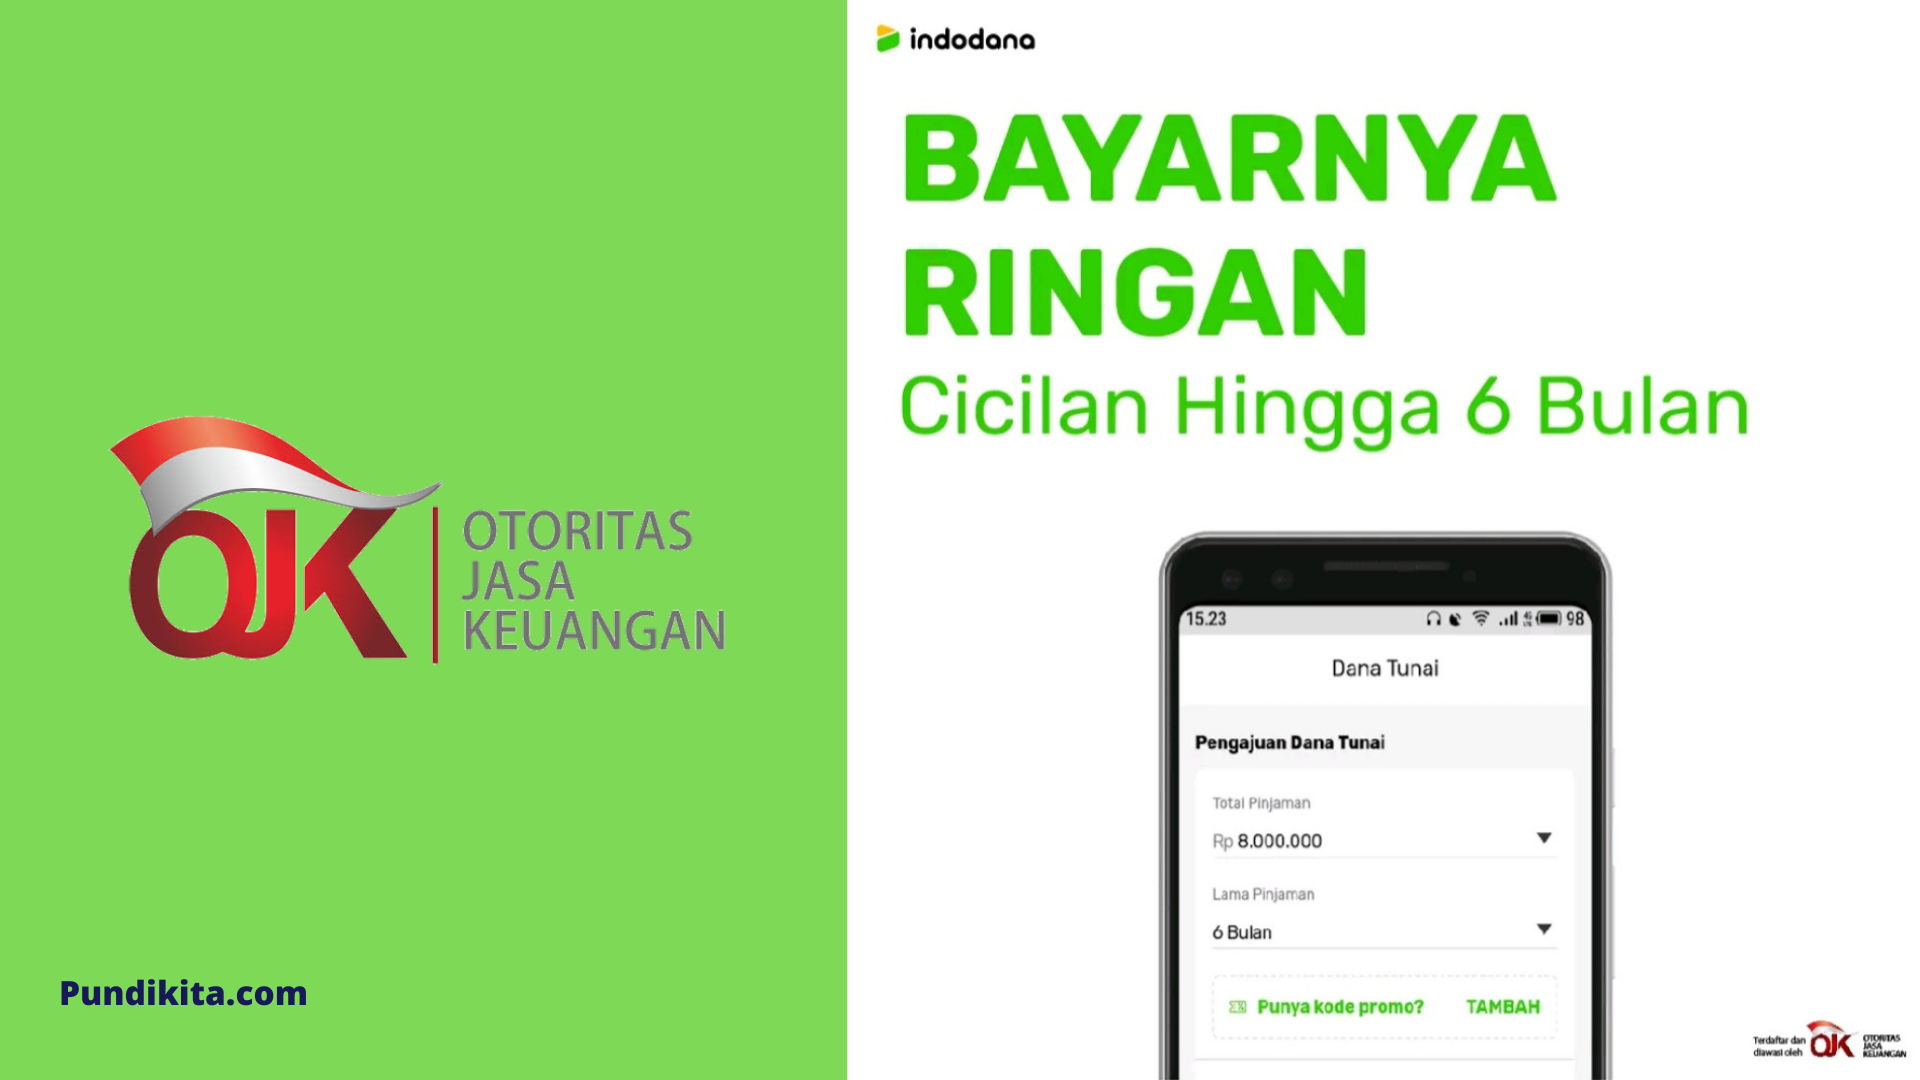 Pinjaman Online Indodana, Limit 8 juta Dicicil 6 Bulan - PundiKita